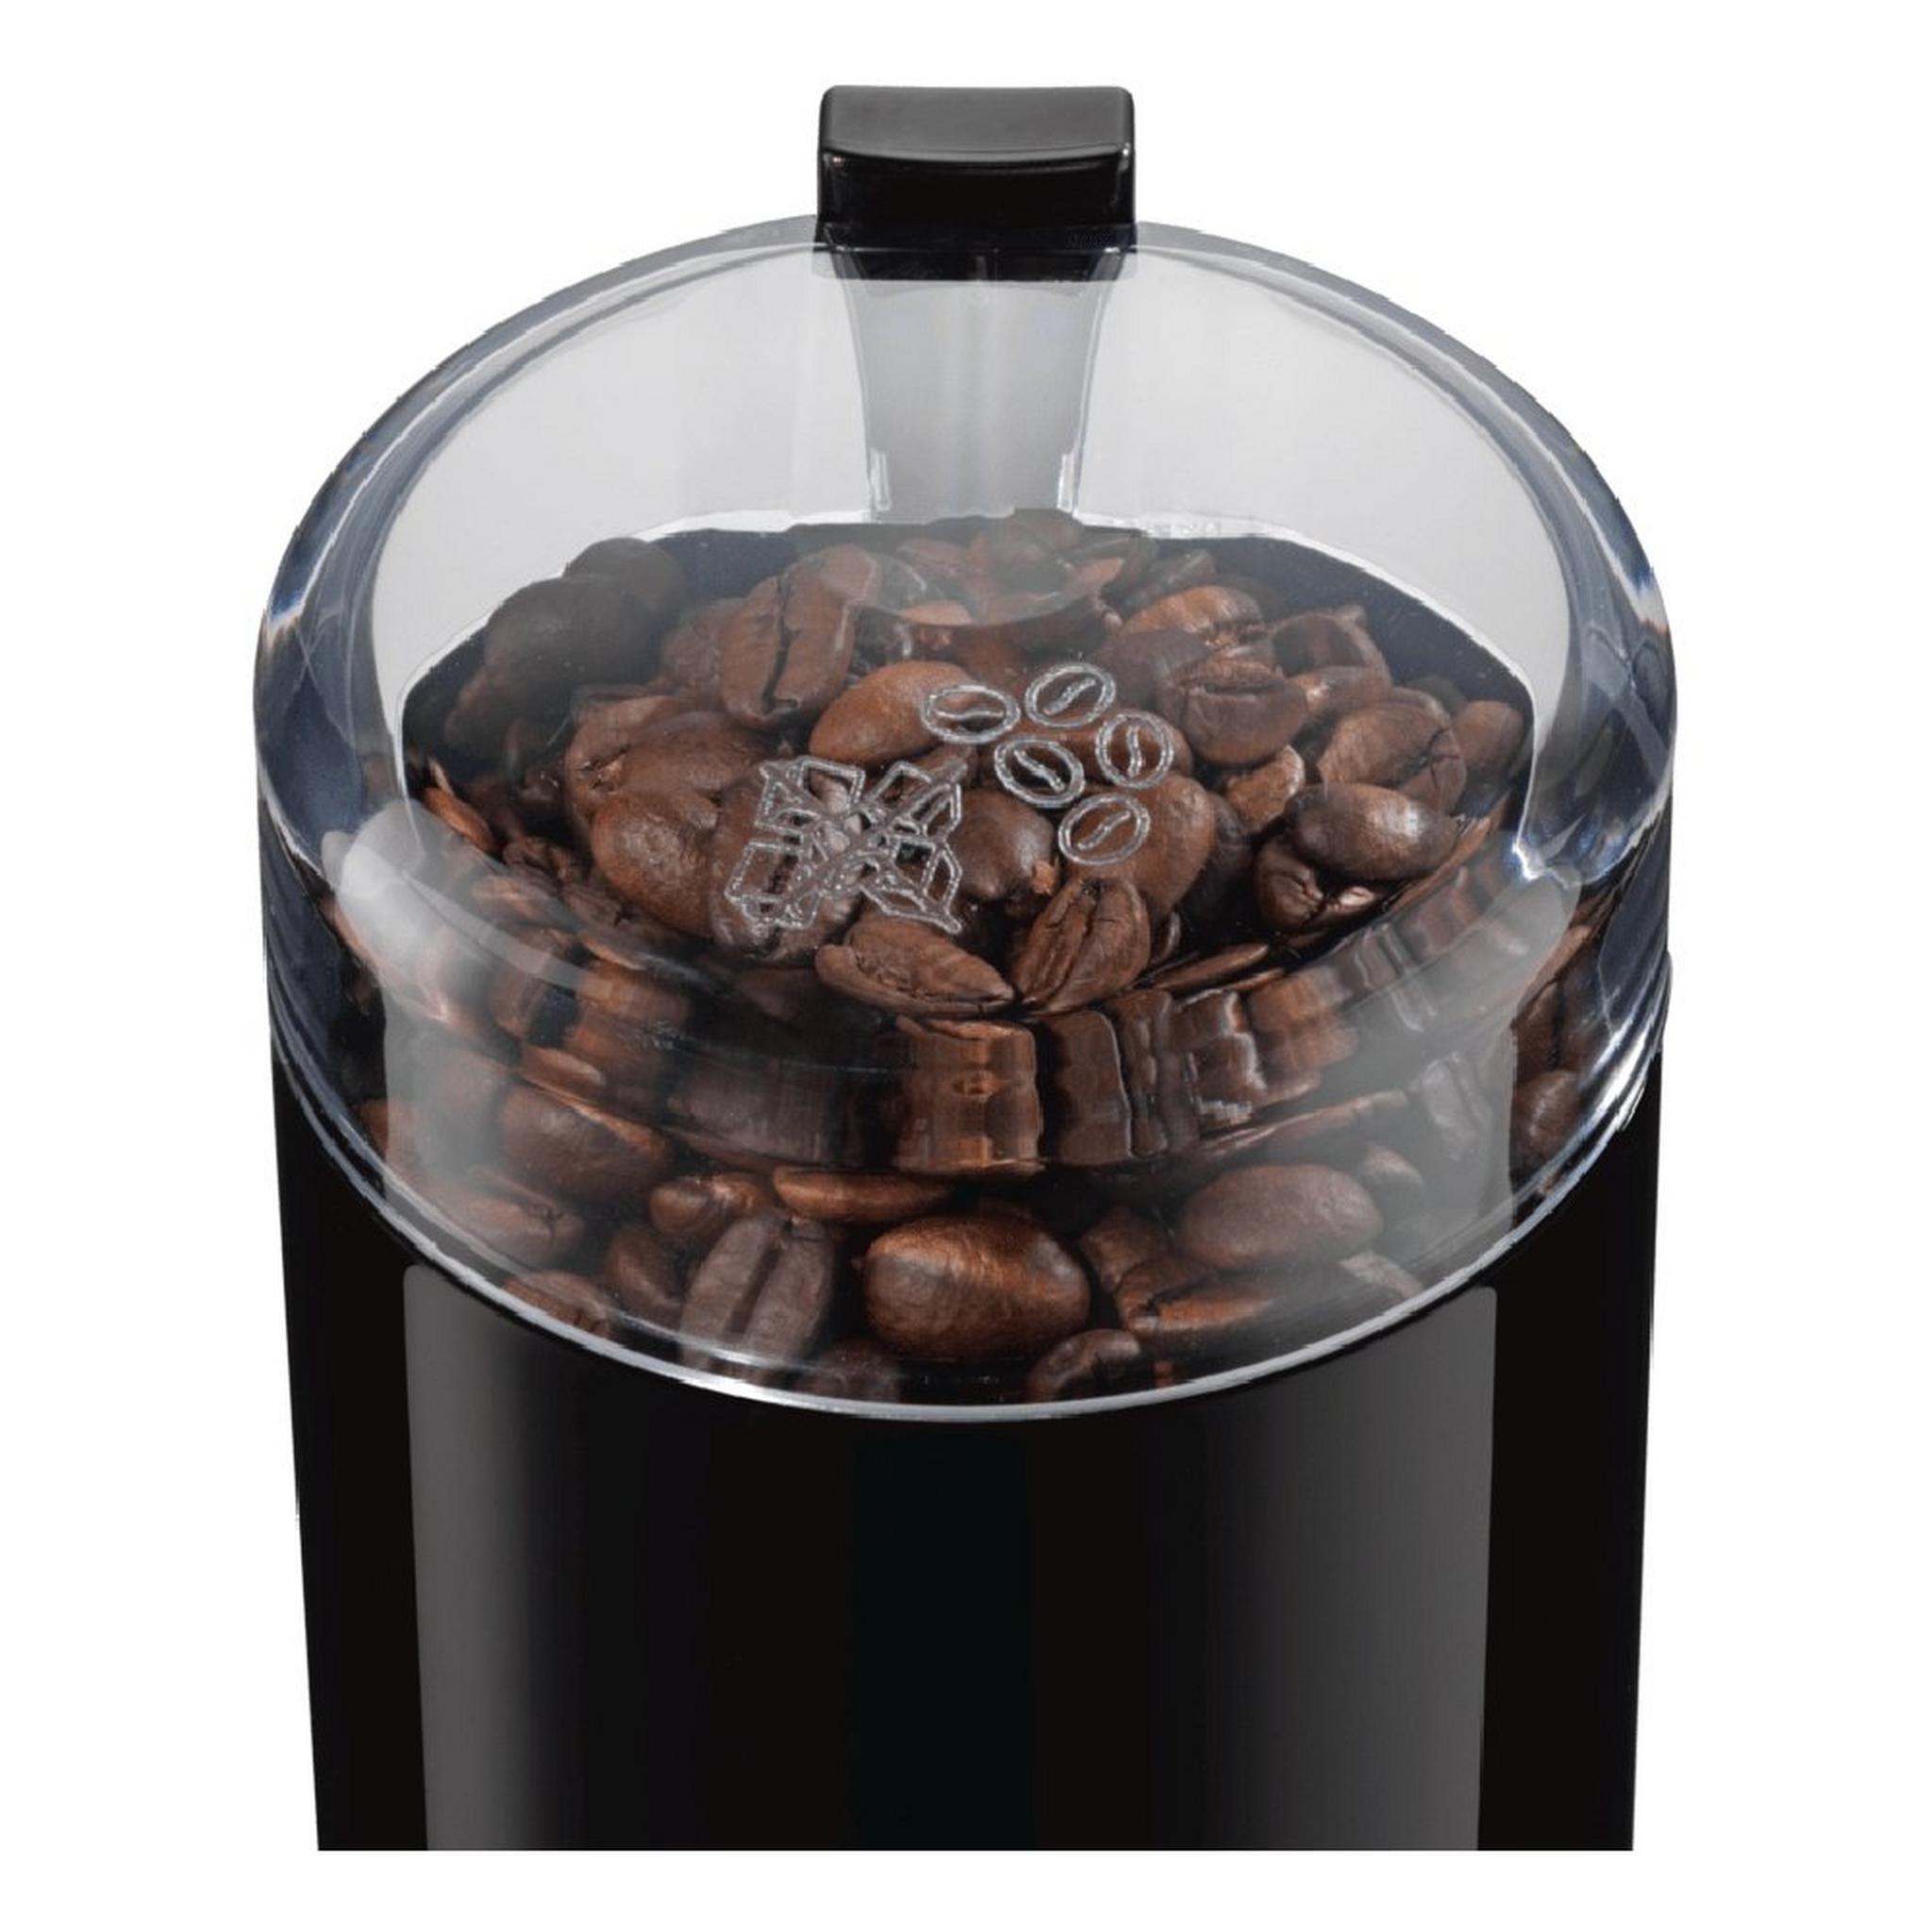 Bosch MKM6003 Coffee Grinder 180W